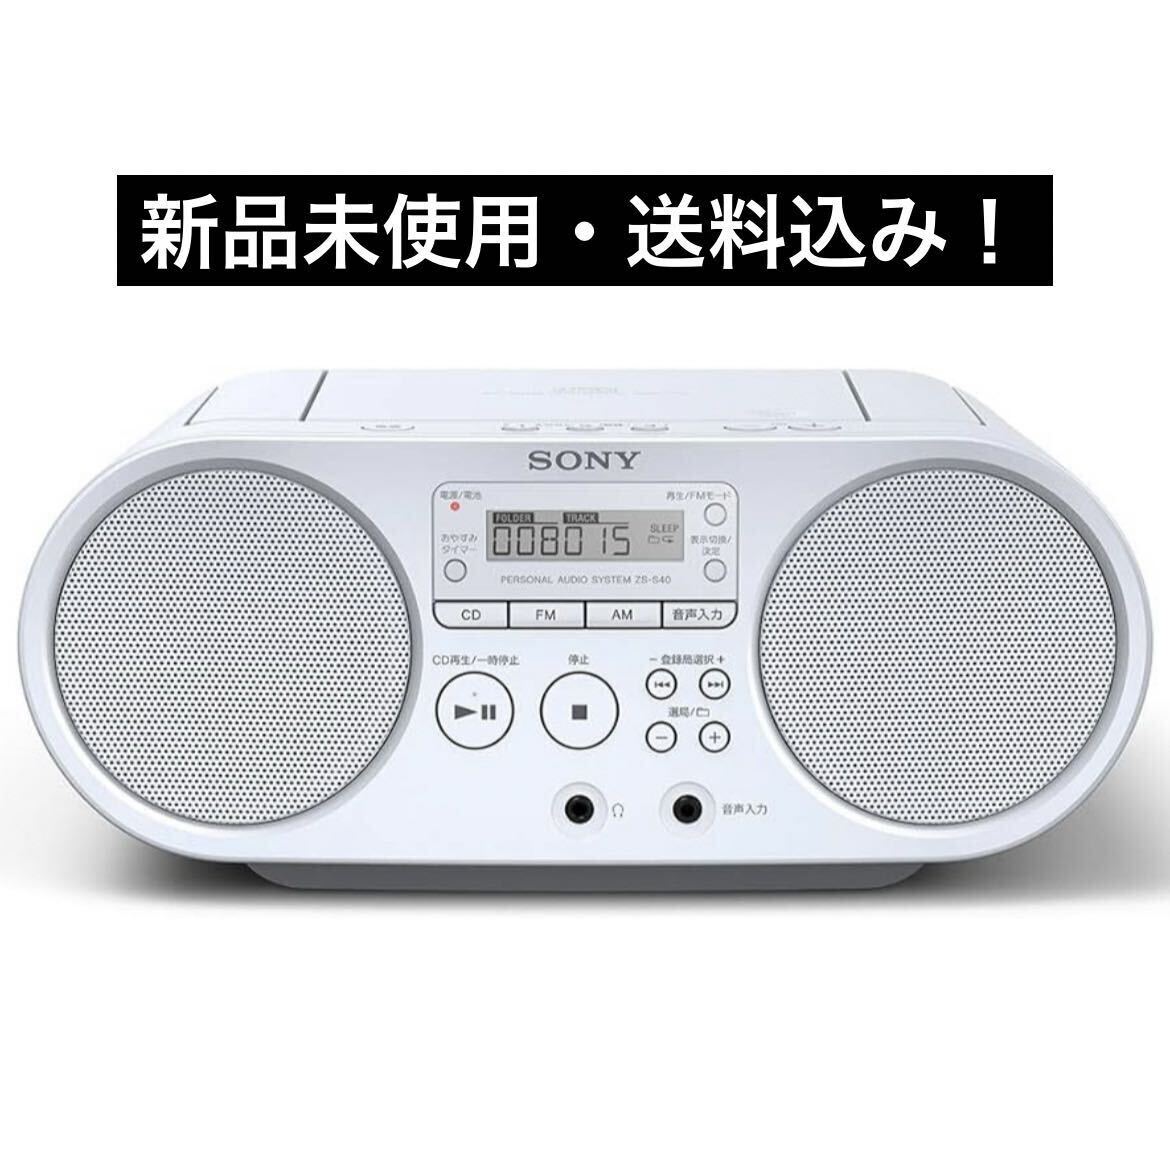 SONY ラジカセ ソニー AUX CDラジオ ZS-S40 FM/AM/ワイドFM対応 ホワイト ZS-S40 W_画像1